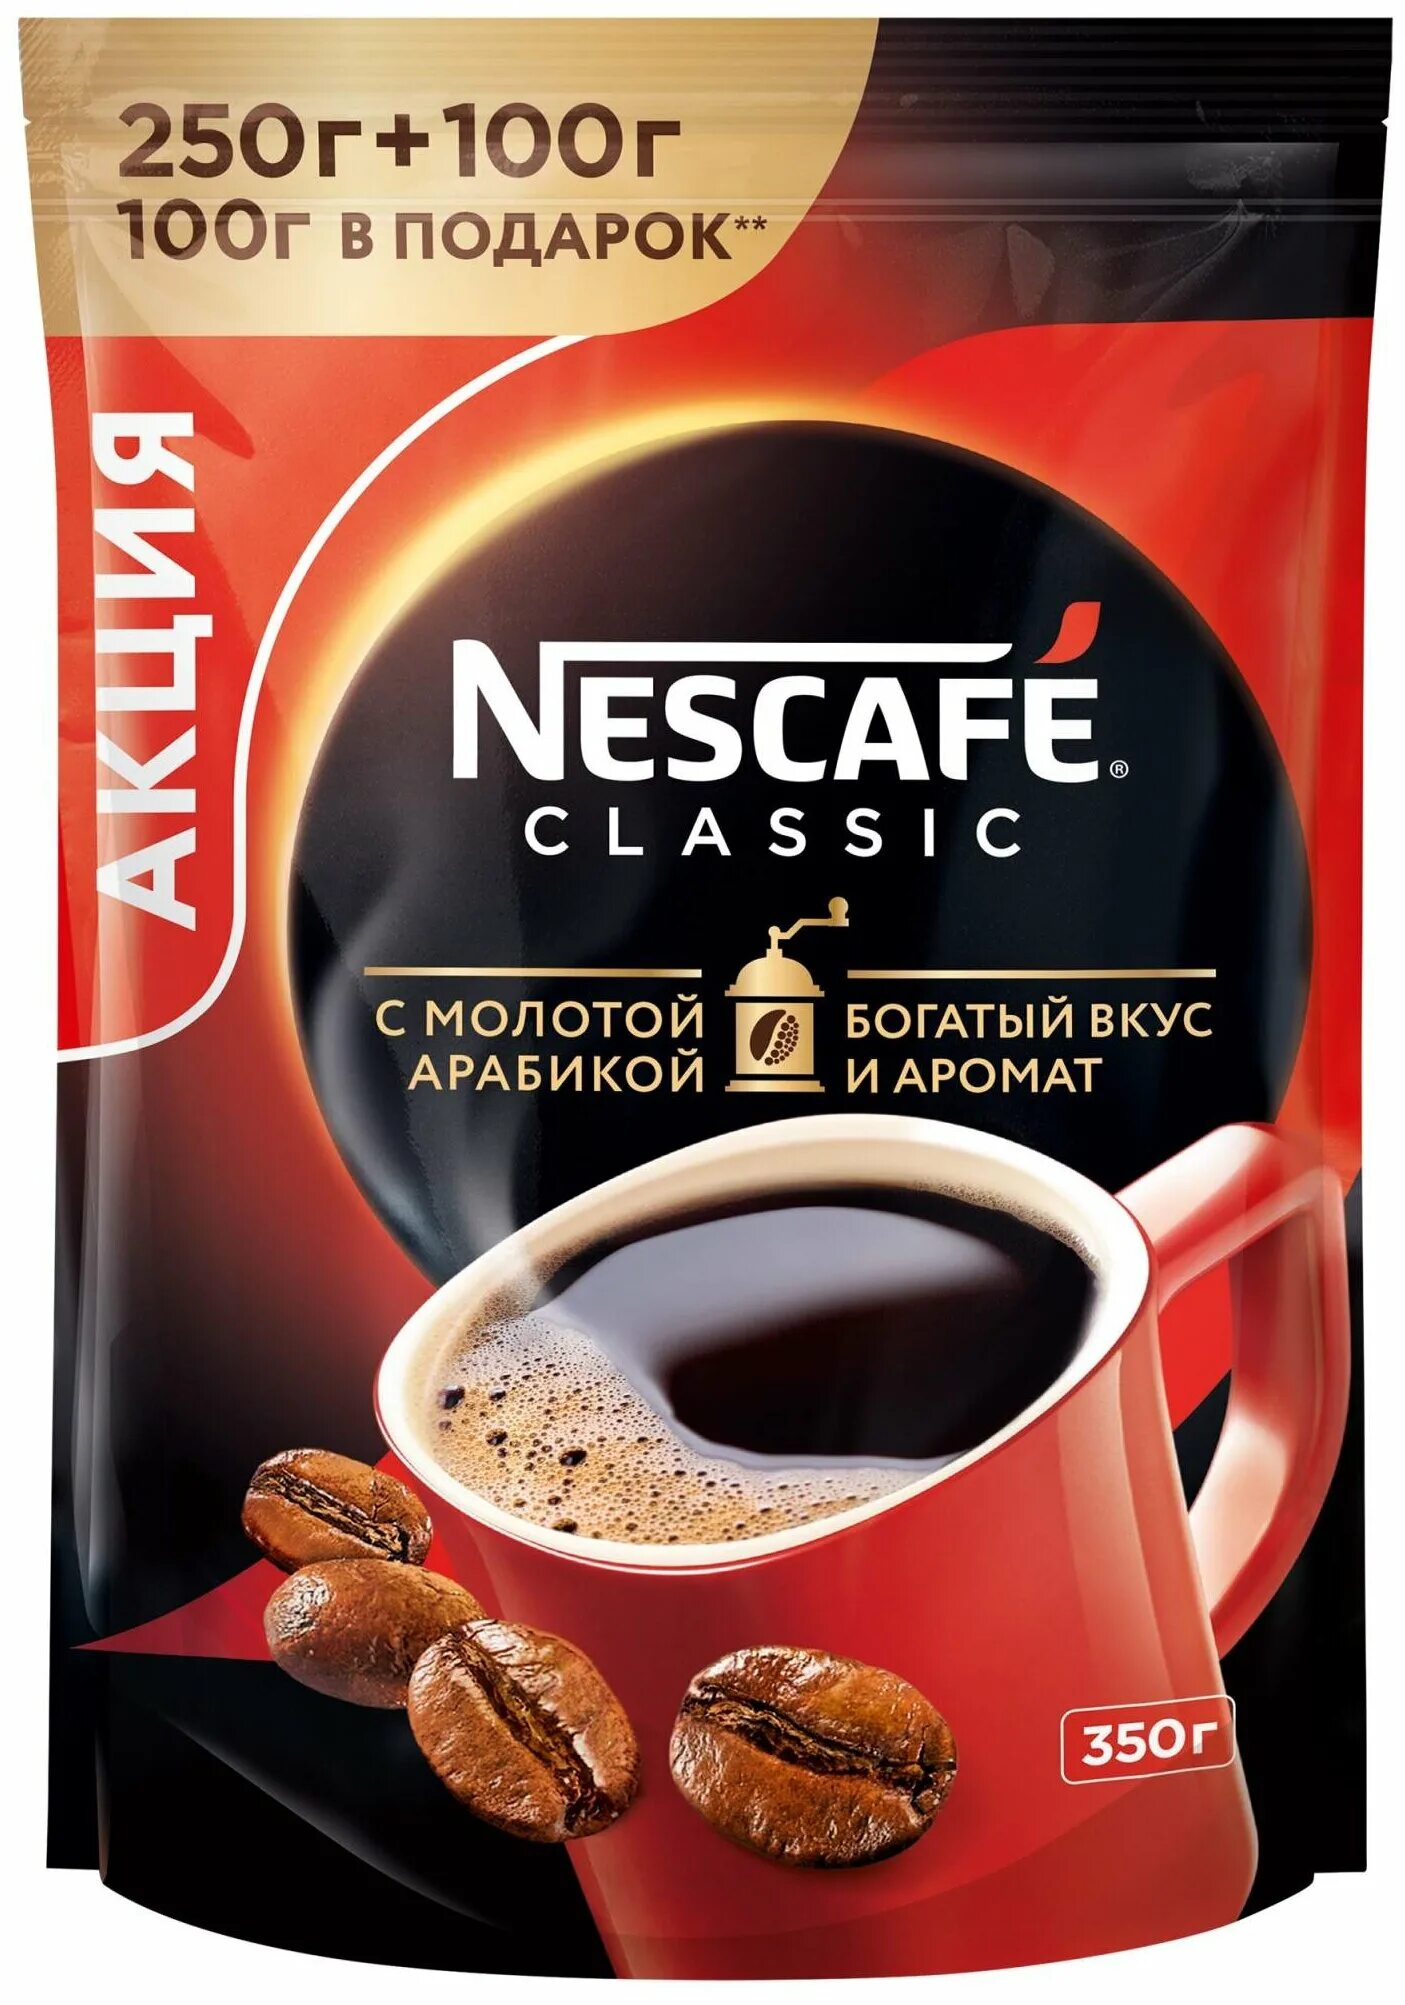 Купить nescafe растворимый кофе. Coffee Nescafe 250г. Кофе Nescafe Classic 250г. Nescafe Gold 250+100. Кофе растворимый Нескафе Классик Арабика 300.